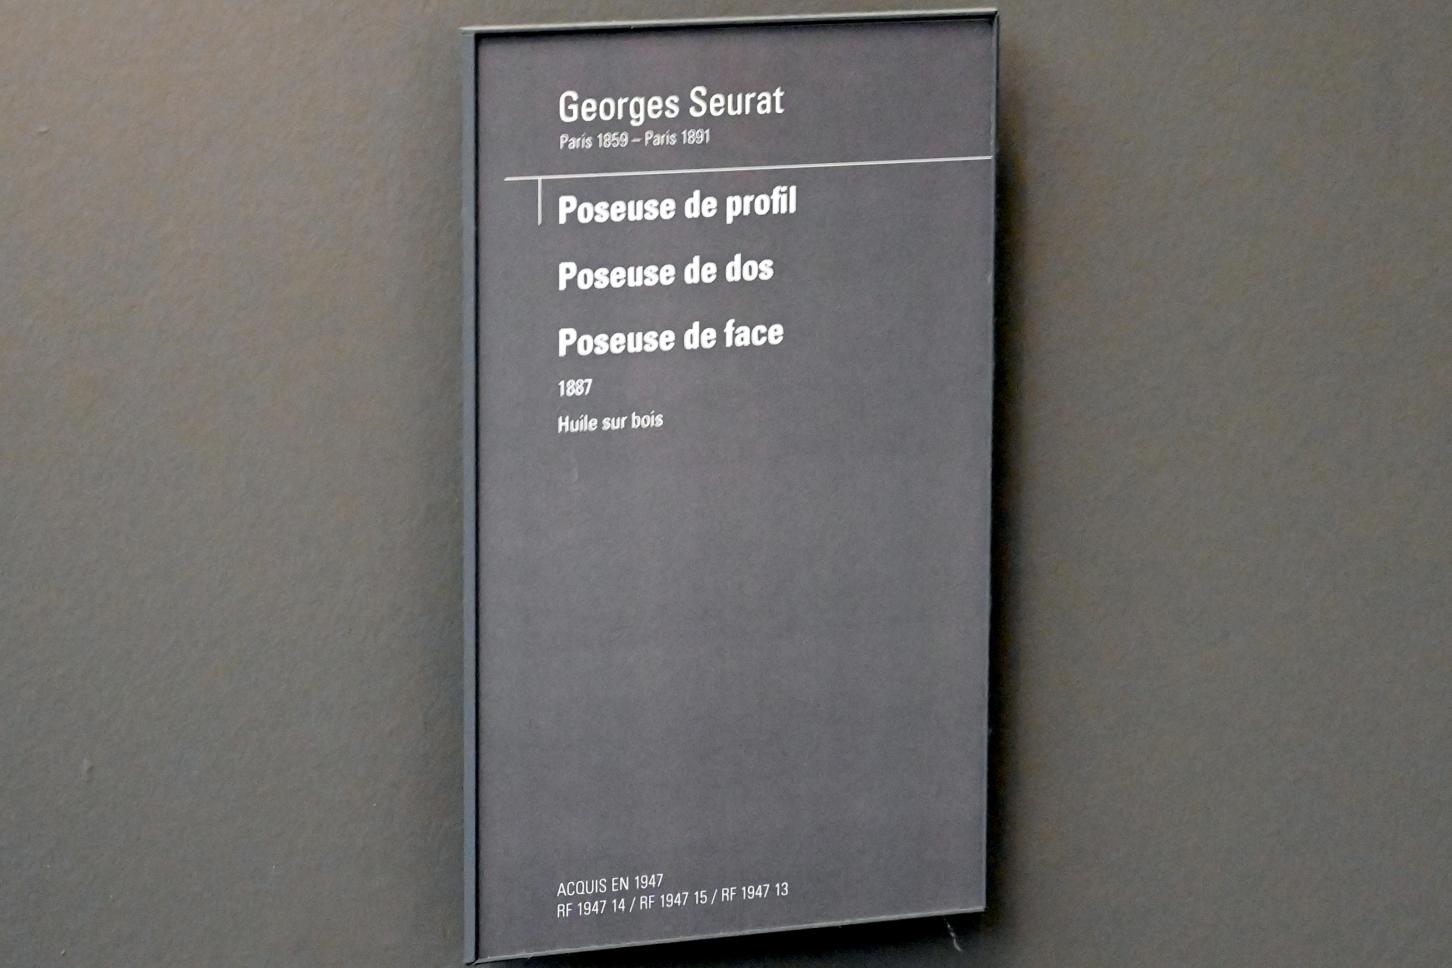 Georges Seurat (1879–1891), Studie Stehendes Modell, Vorderansicht, Paris, Musée d’Orsay, 1887, Bild 3/4